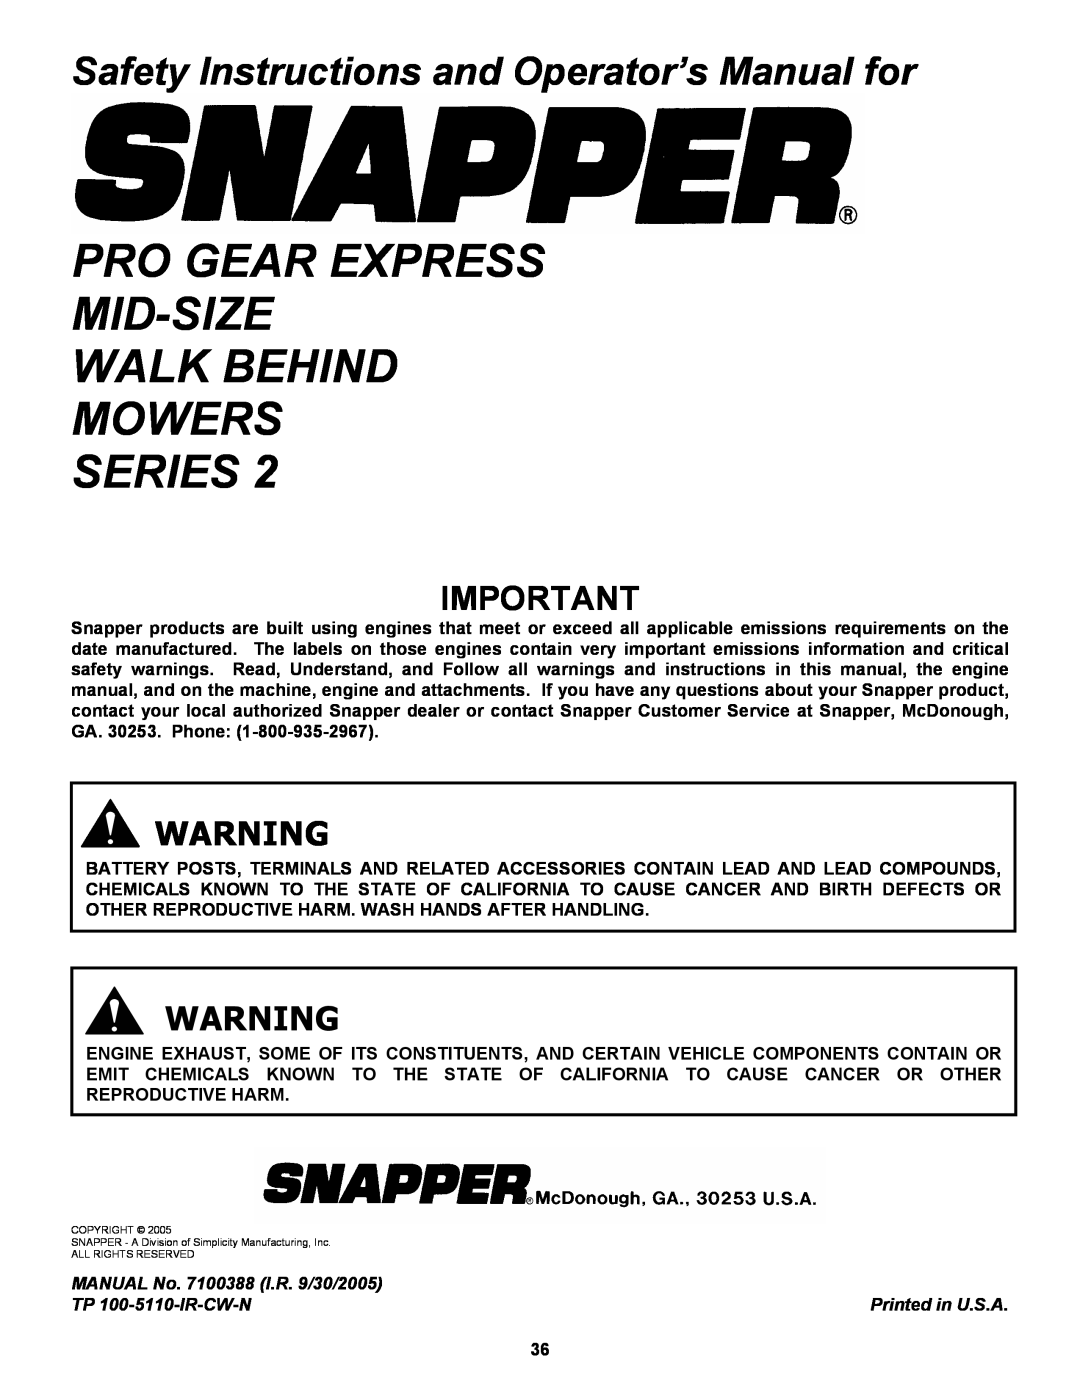 Snapper SPE132KW, SPE152KW, SPE361, SPE481 Pro Gear Express Mid-Size Walk Behind Mowers, Series 